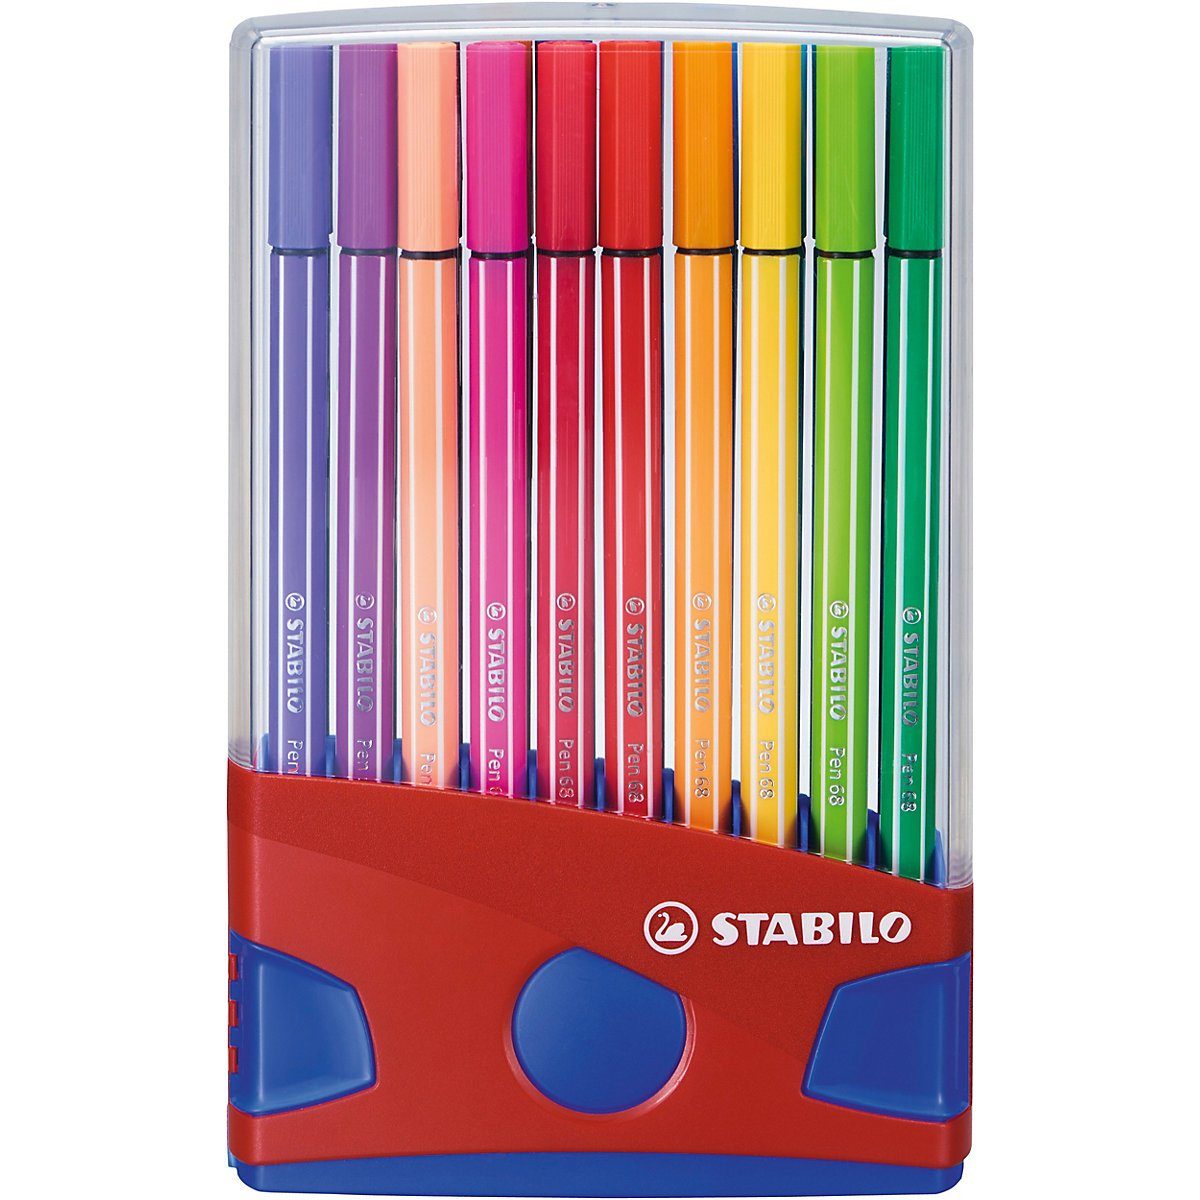 STABILO Filzstift Premium-Filzstifte Pen 68, 20 Farben im Color,  Altersempfehlung: ab 5 Jahren.